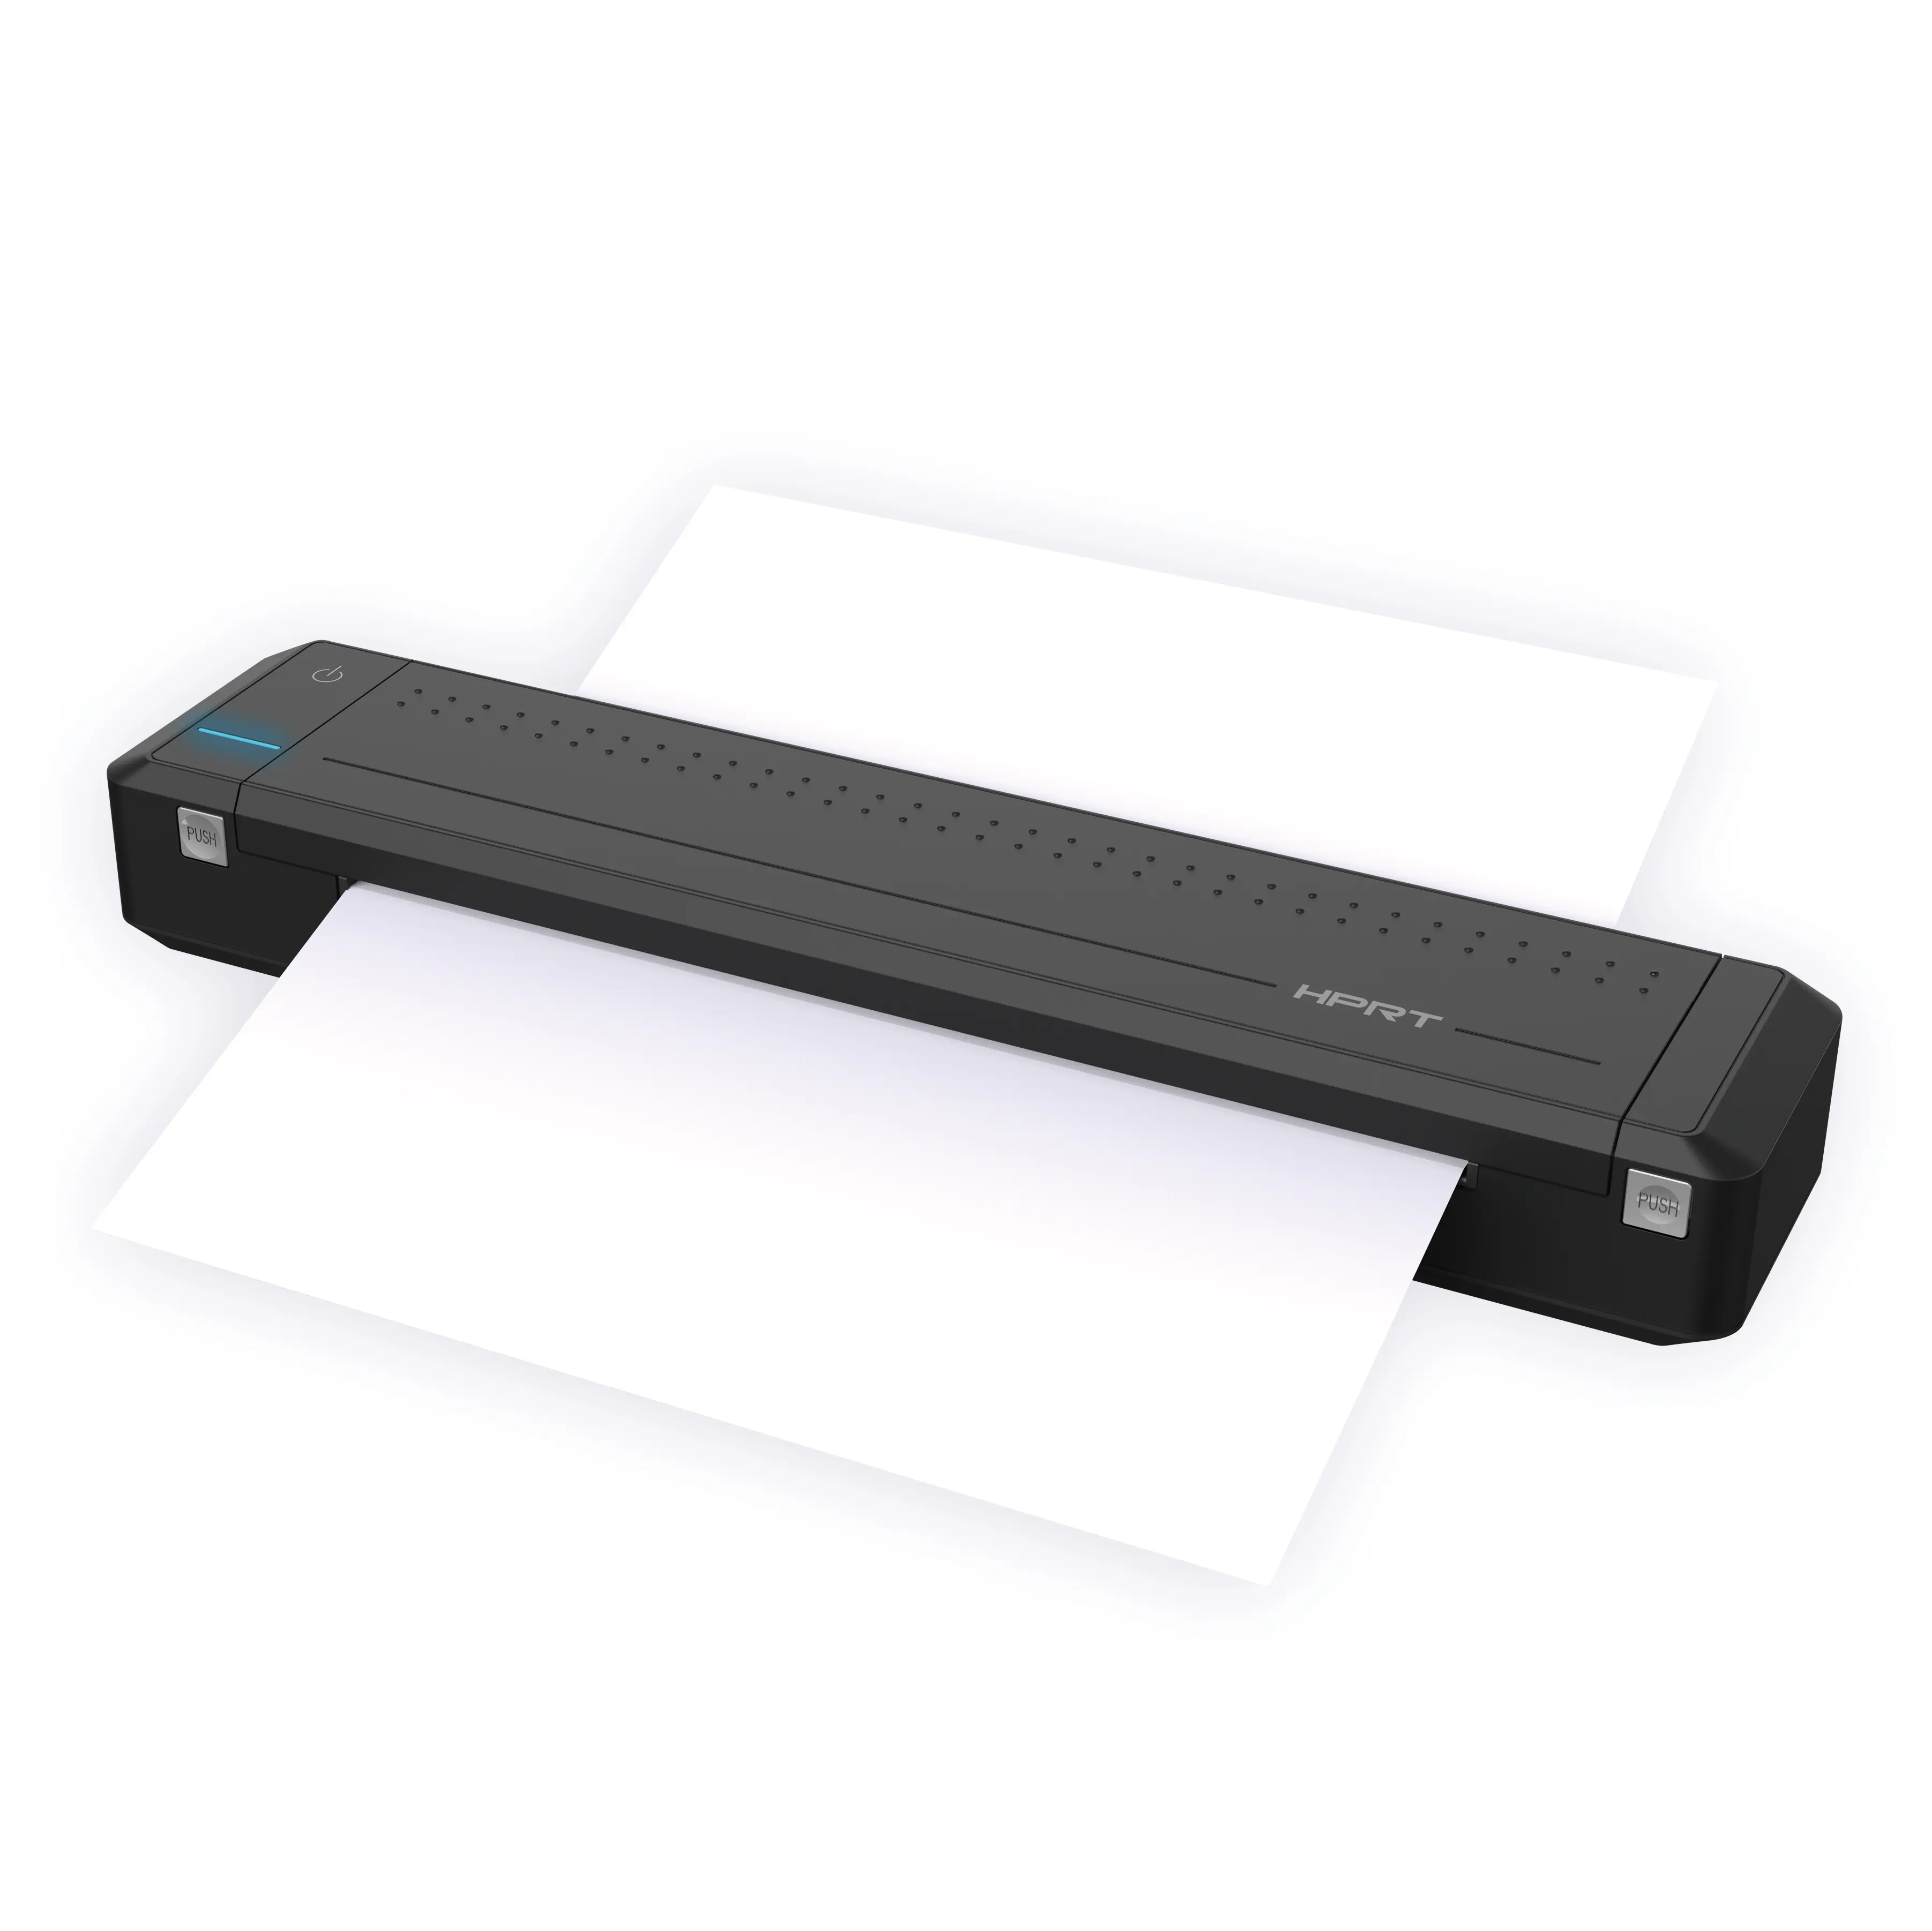 JEPOD MT800 stampante termica A4 stampante portatile Mini BT Wireless stampante per ufficio per viaggi d'affari